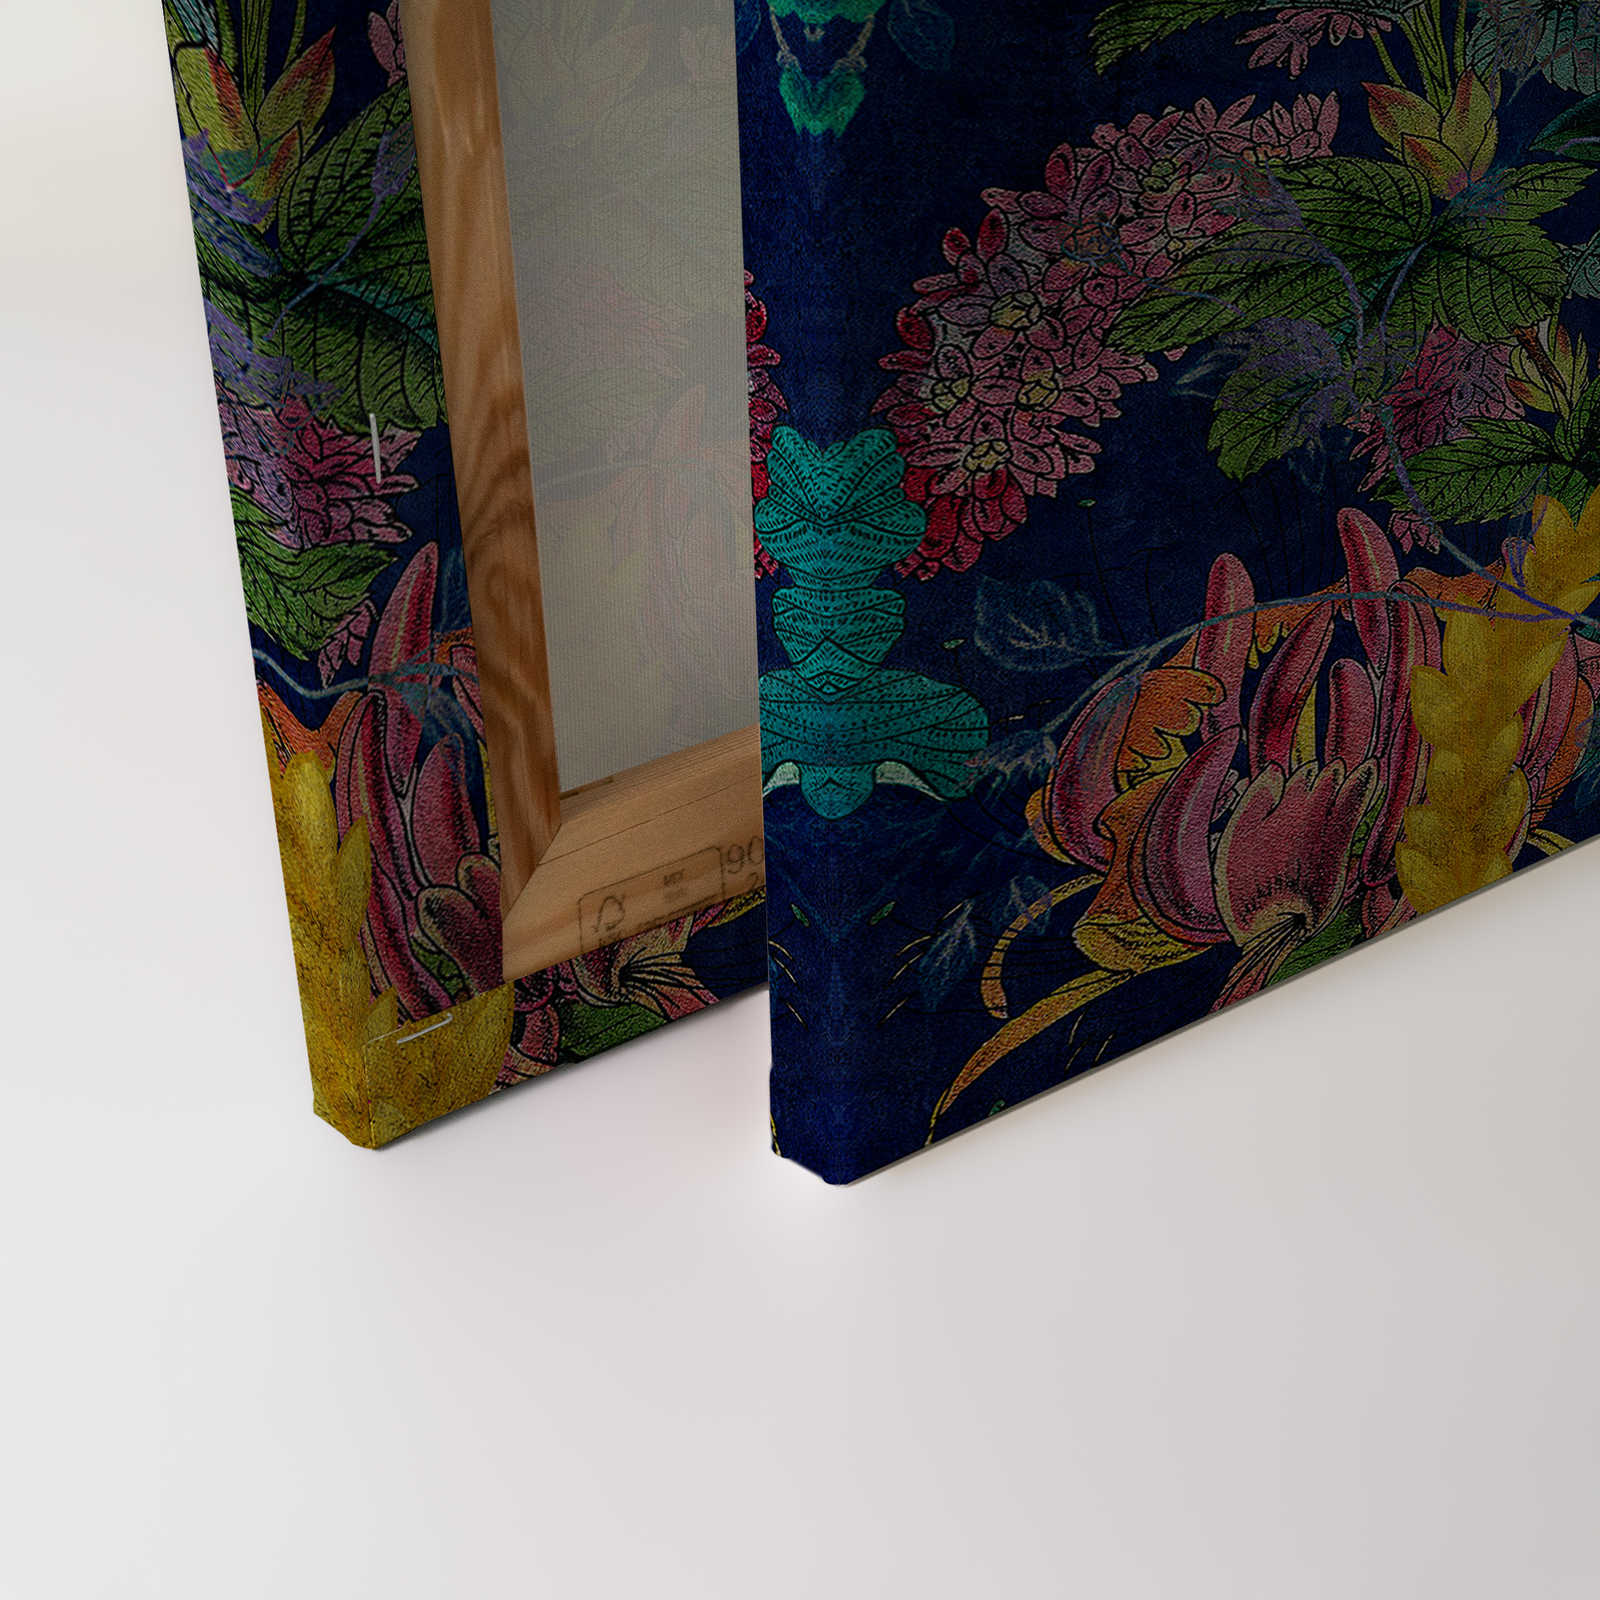             Tropical Hero 1 - Toile Fleurs & Perroquet couleurs intenses - 1,20 m x 0,80 m
        